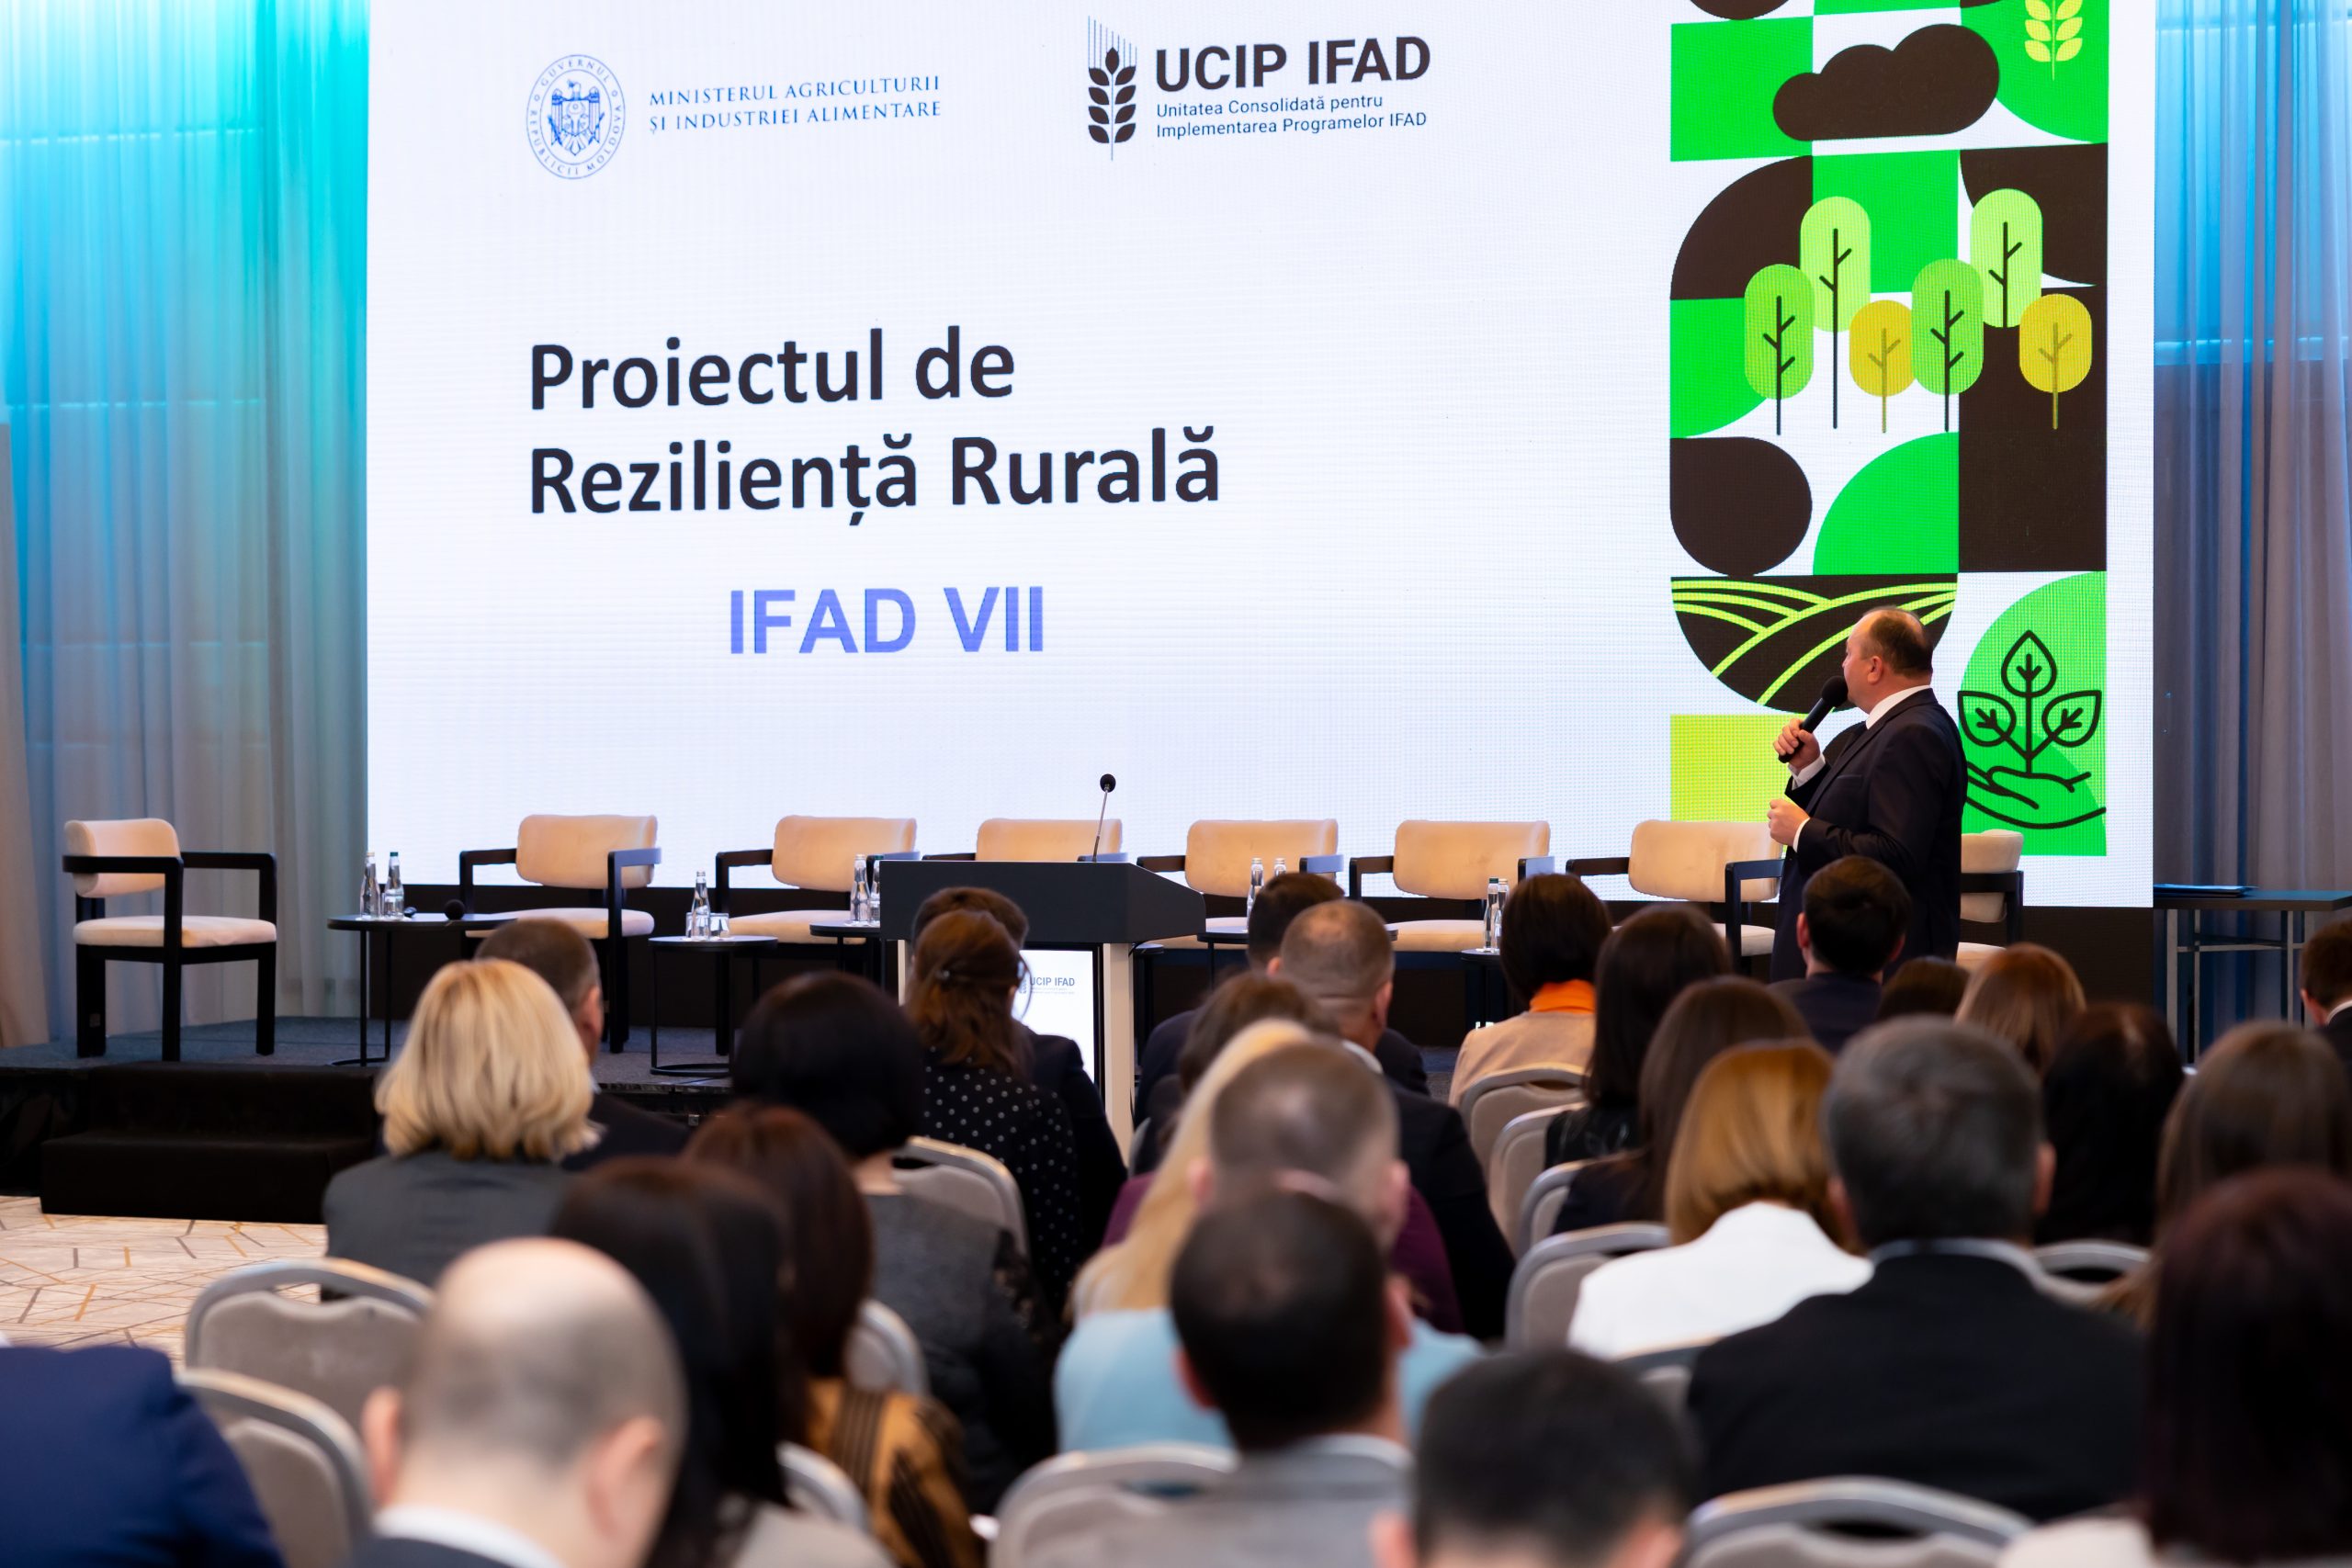 23 de milioane de dolari investiți în reziliența rurală din Republica Moldova: IFAD și-a prezentat rezultatele proiectului